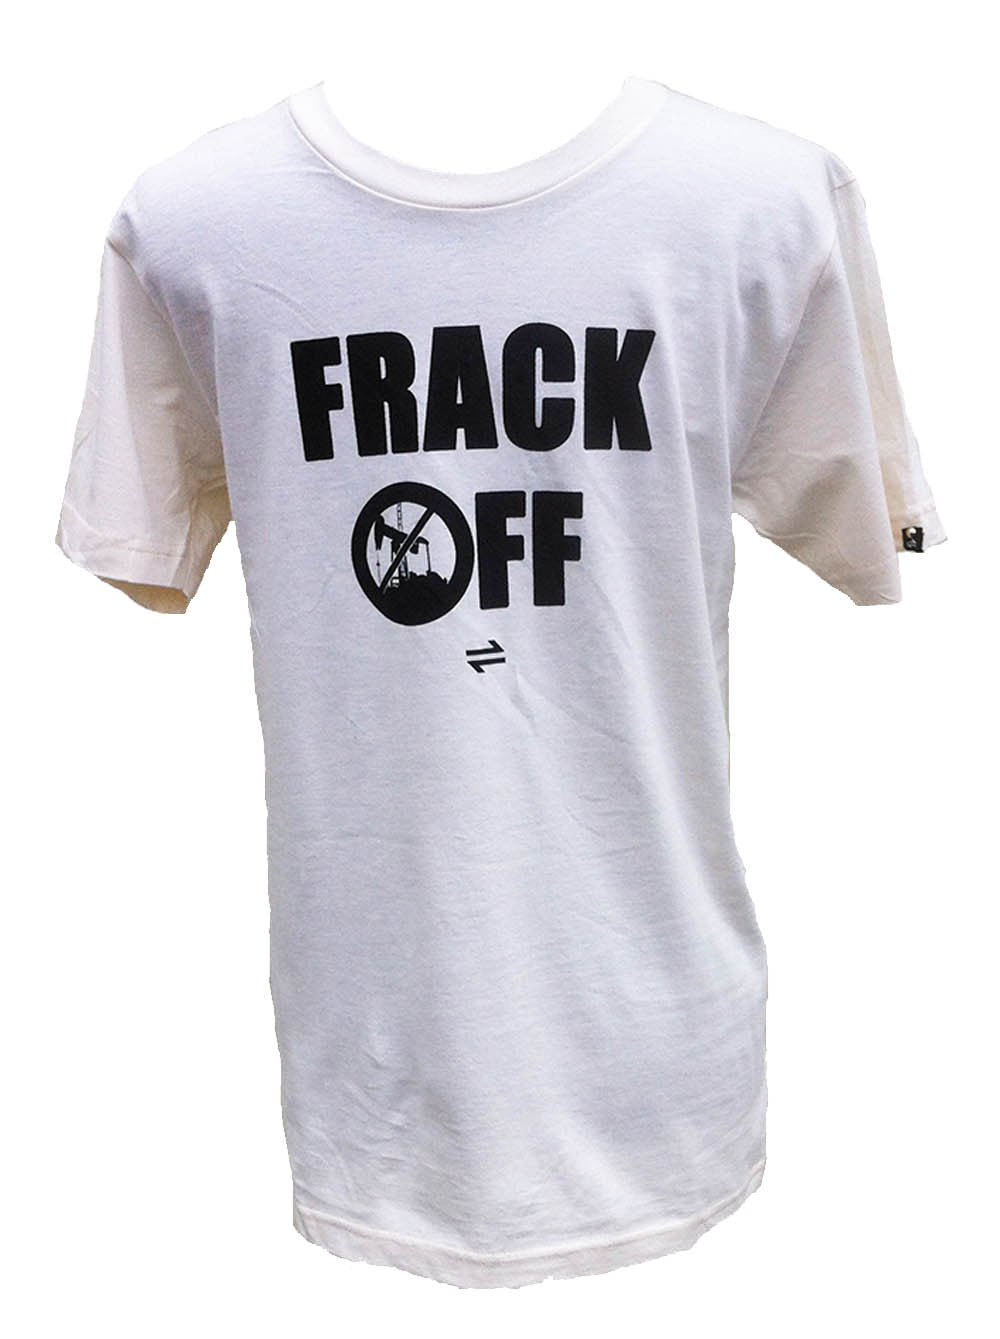 Equillibrium Frack OFF Organic Cotton T-shirt (Unisex) - Equillibrium - 2